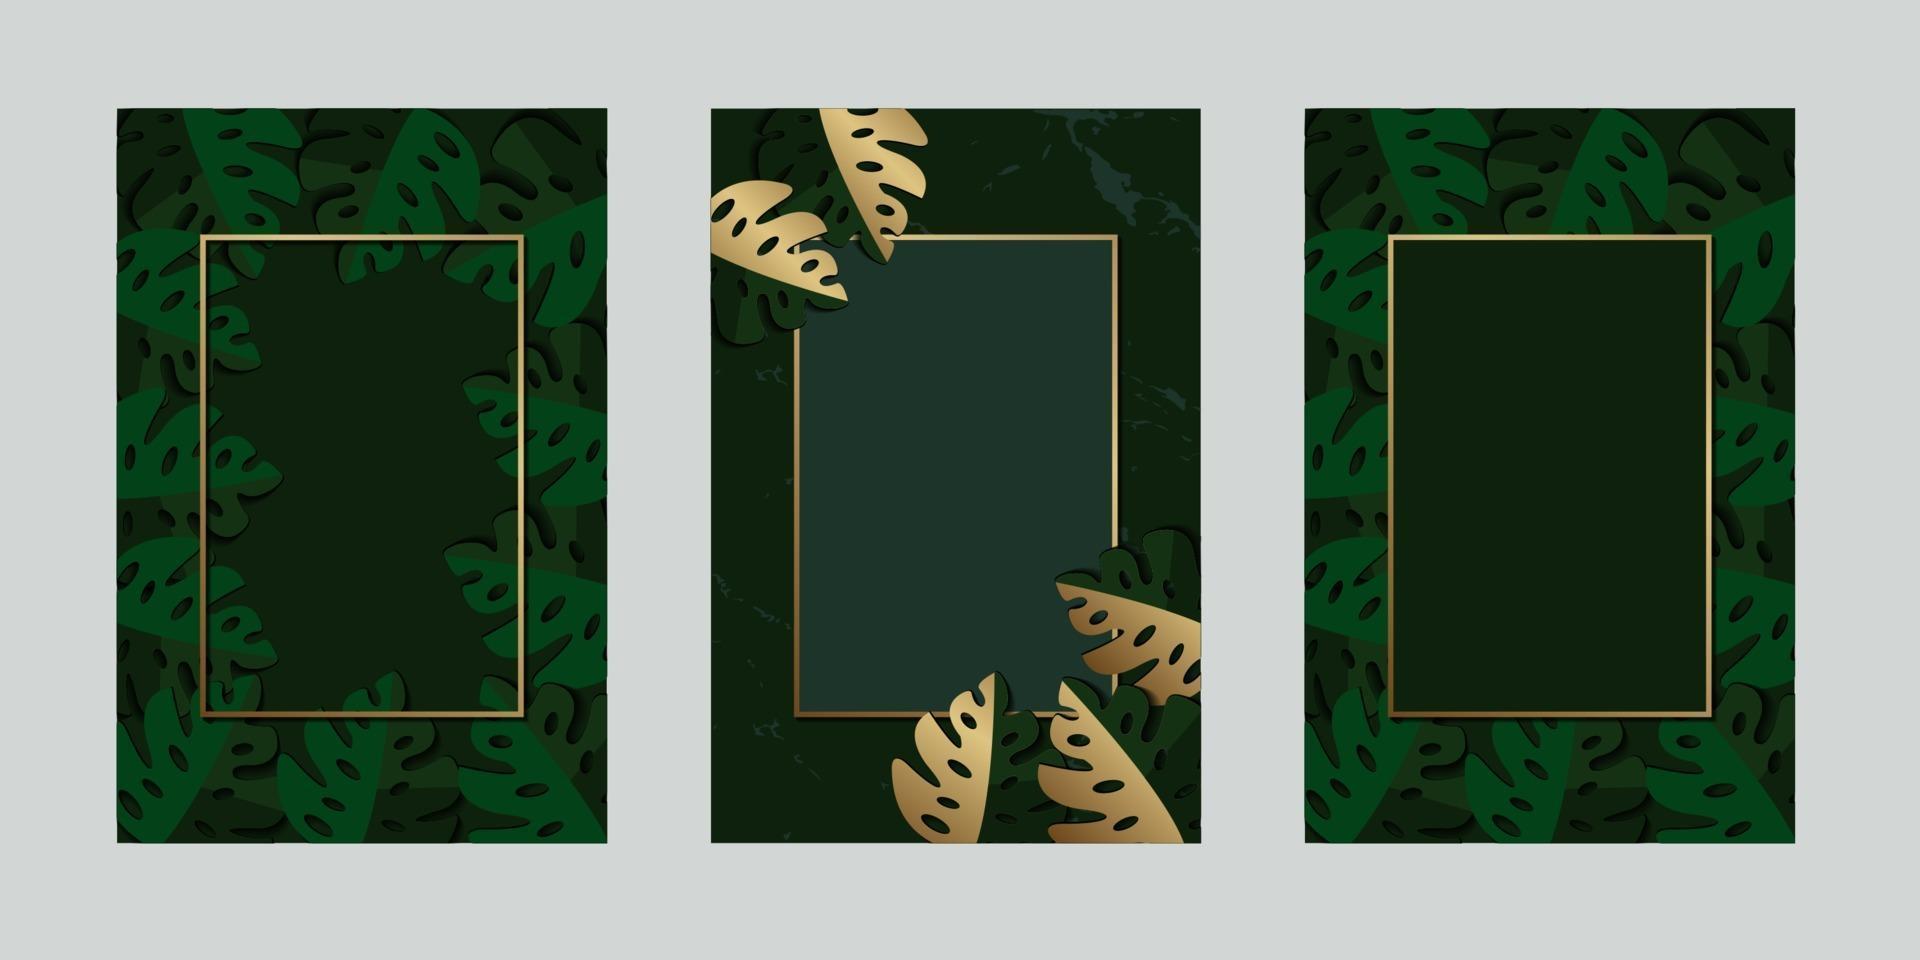 tropisches Gold des grünen Einladungskartenblattes mit Rahmen für Textnachrichtvektorentwurfsillustration vektor